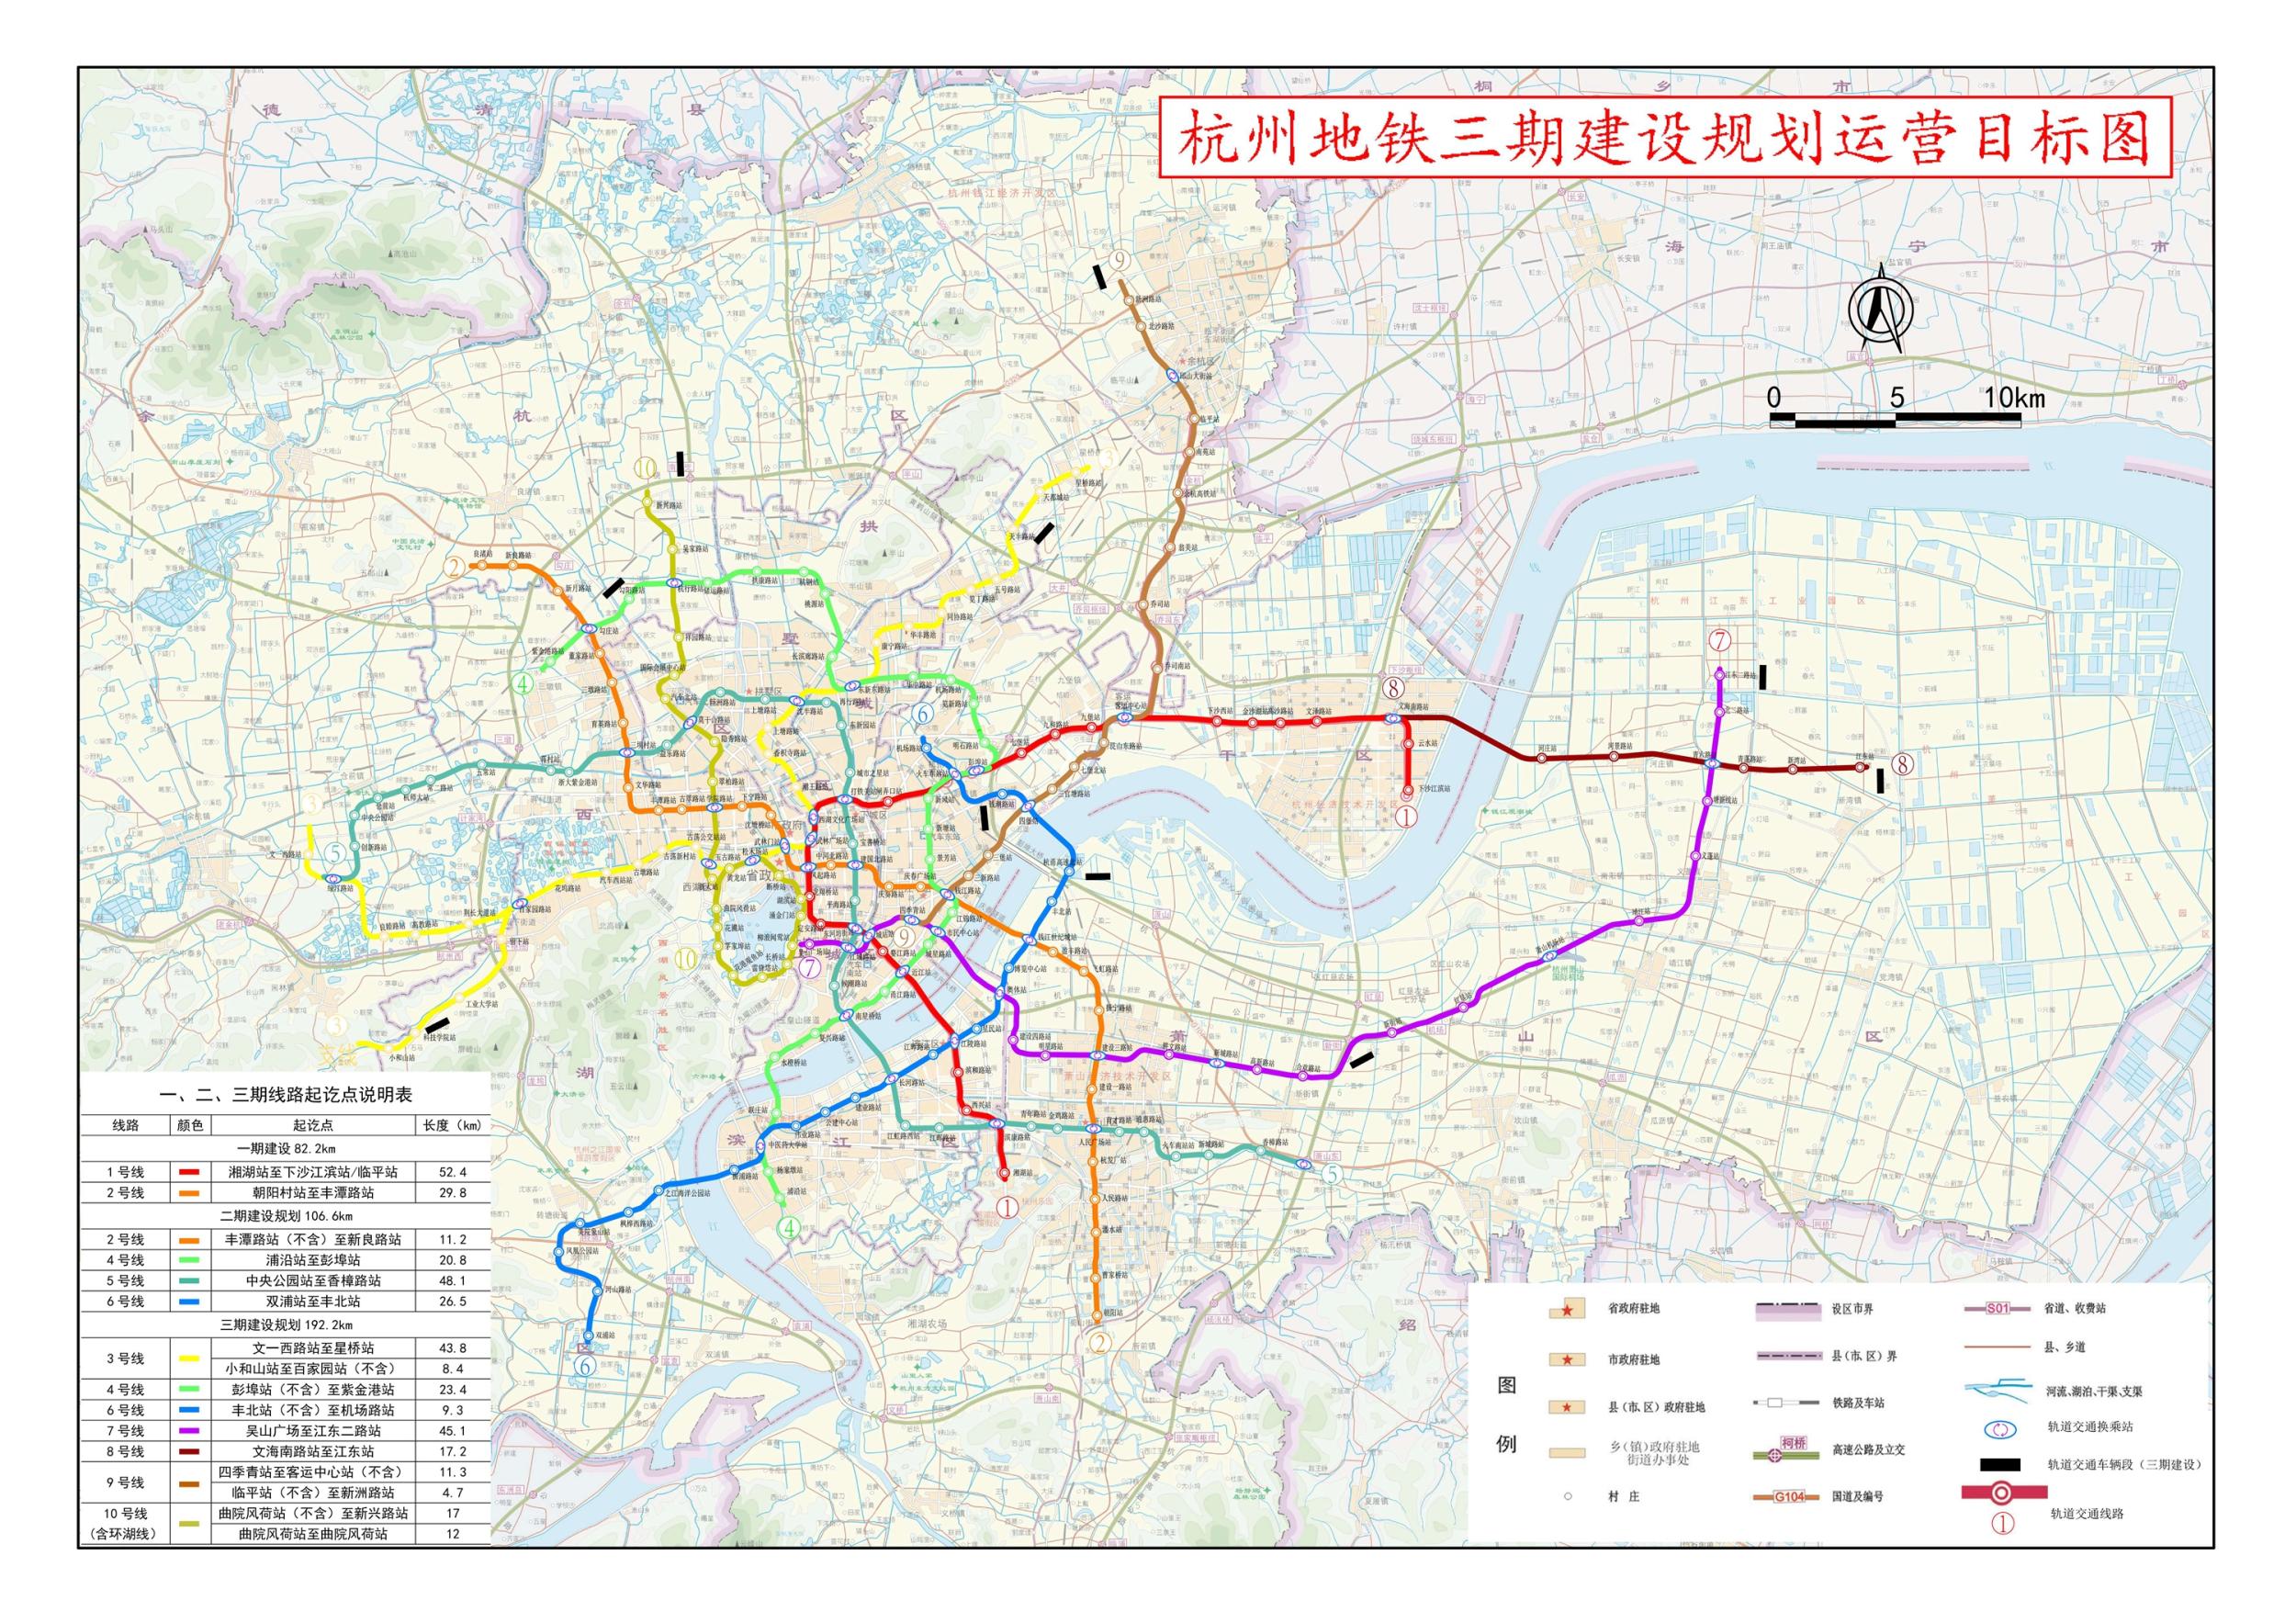 定了 杭州地铁三期10条线路获批,计划亚运会前建成!89带你看四大亮点